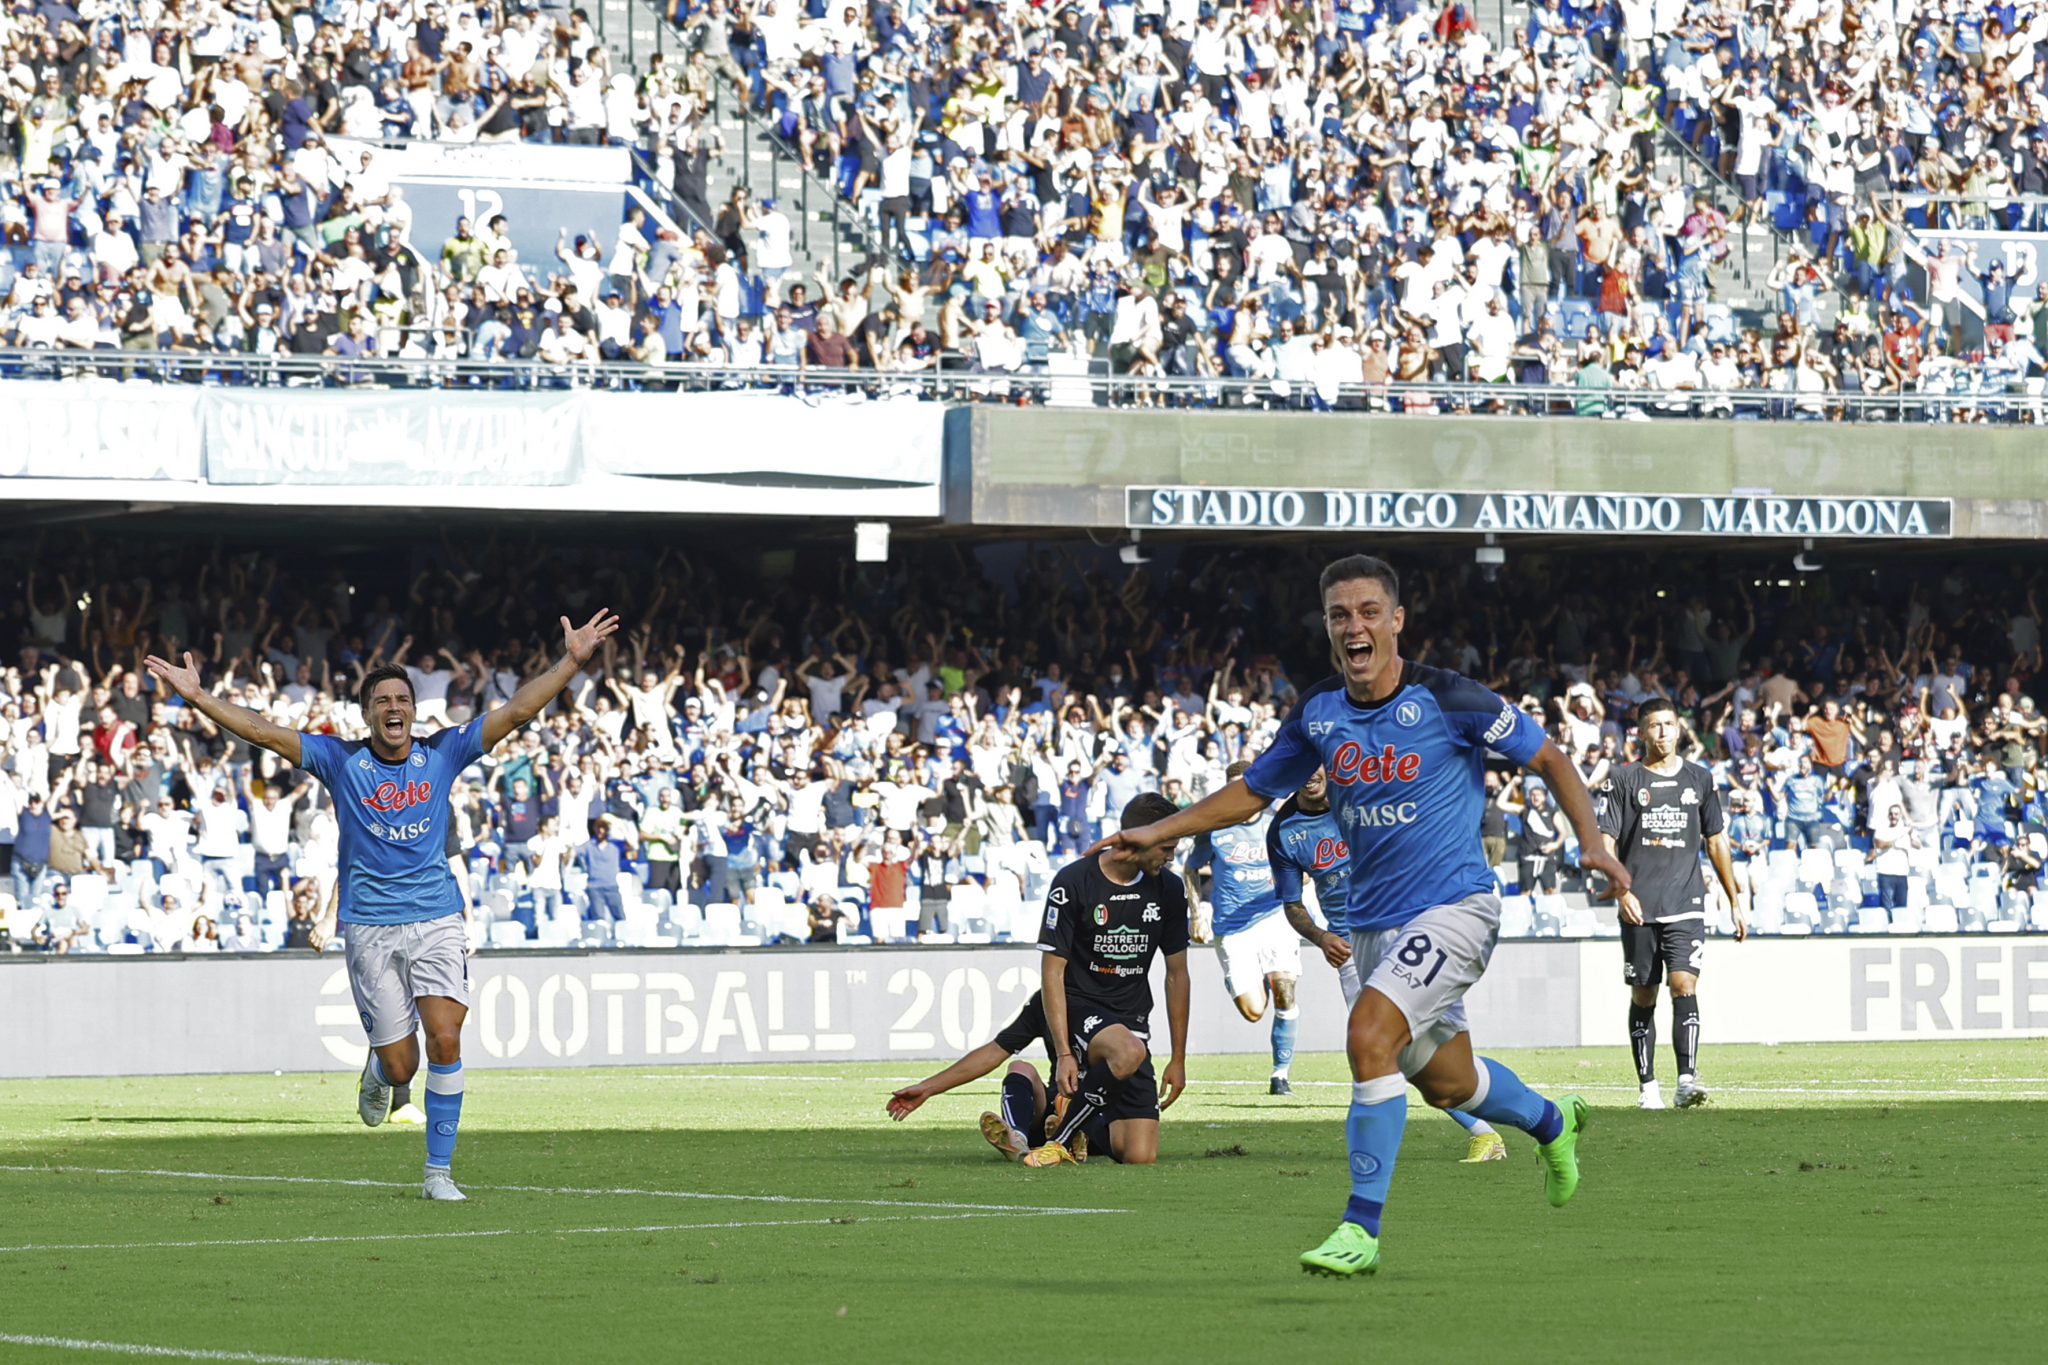 MUNICIJA POTROŠENA PROTIV LIVERPULA Napoli u 90. minutu slomio otpor Specije i upisao novu pobedu